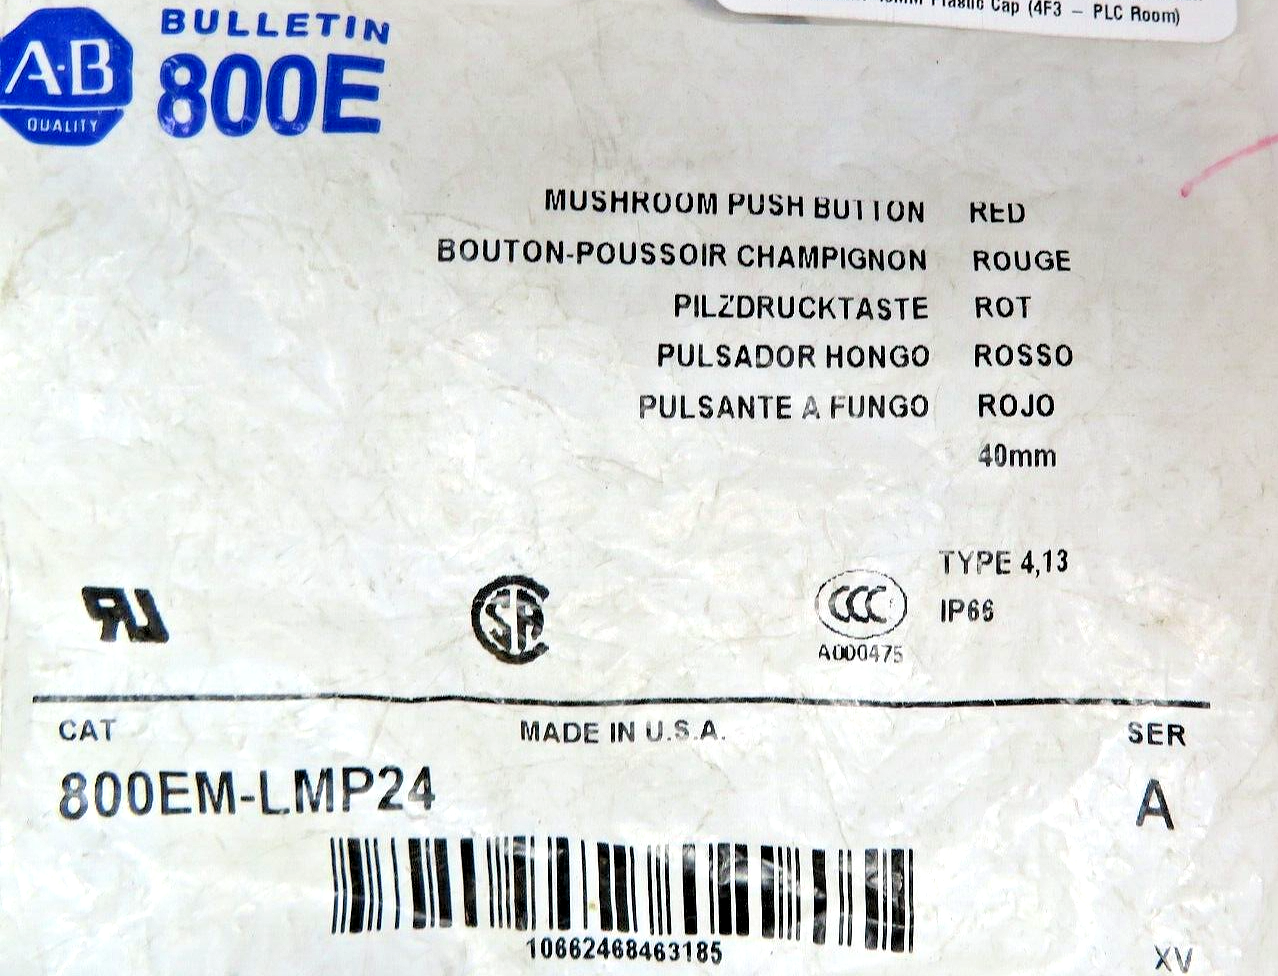 Allen-Bradley 800EM-LMP24 Mushroom Push Button Red ILLUM. 40MM Plastic Cap